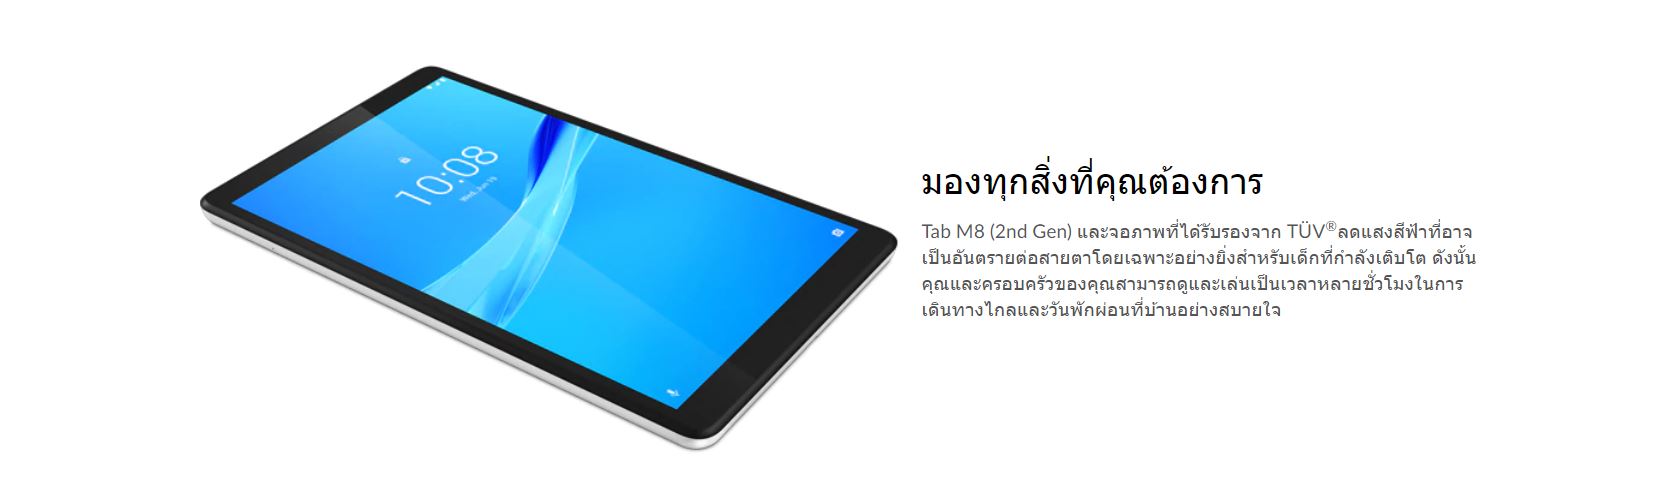 ข้อมูลประกอบของ แท็บเล็ต LENOVO TAB M8 TB-8505X (2rd Gen) 8" 4G LTE โทรออกได้ (3+32GB) ศูนย์ไทย 1 ปี